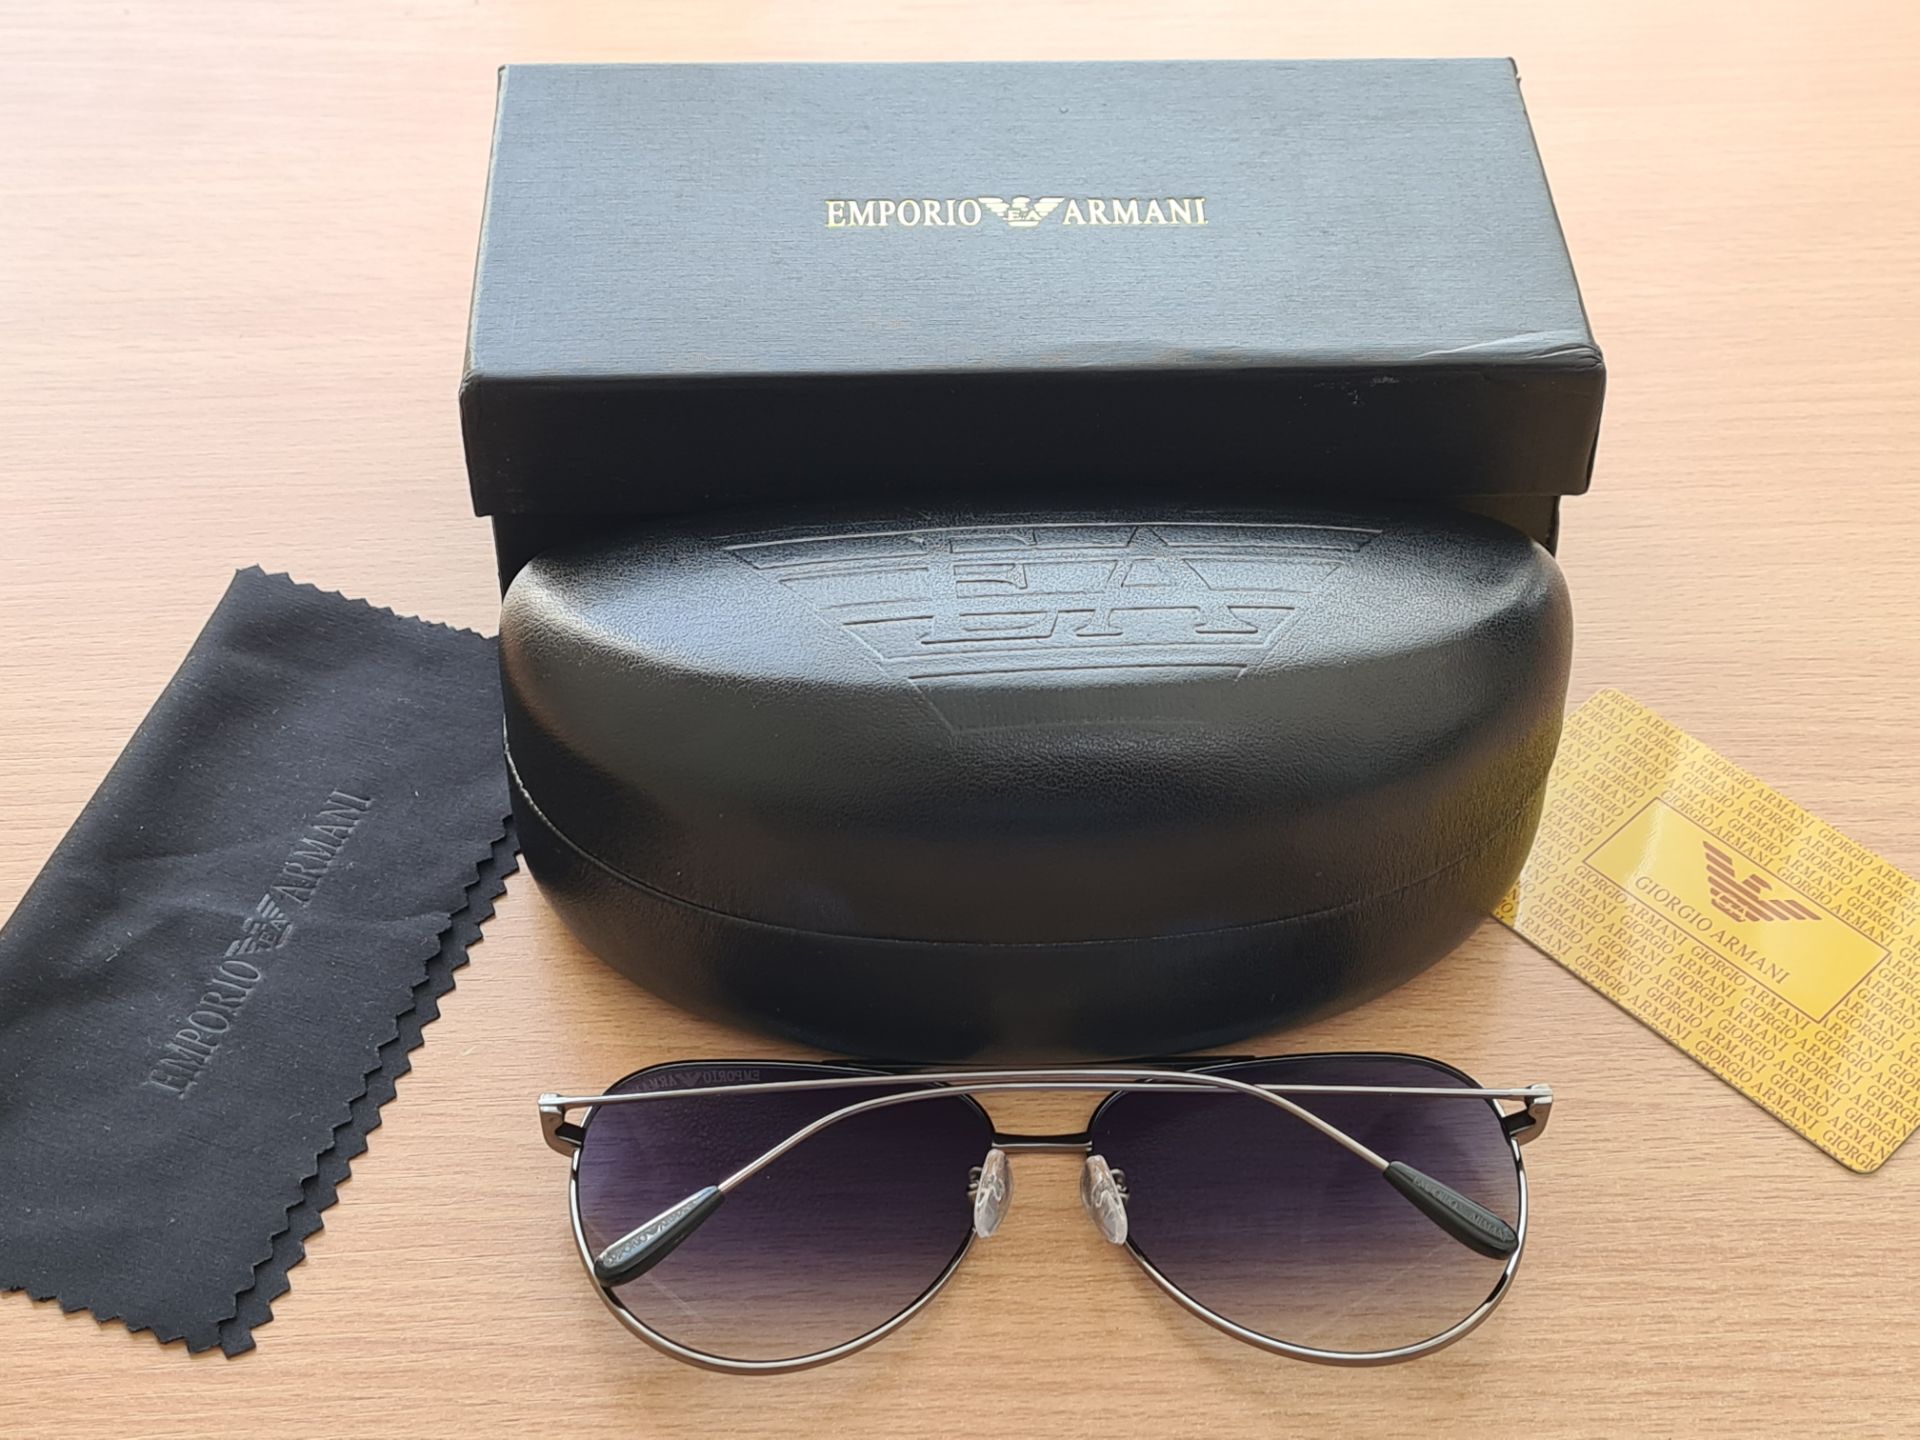 Emporio Armani EA2096 Sunglasses - Image 2 of 2